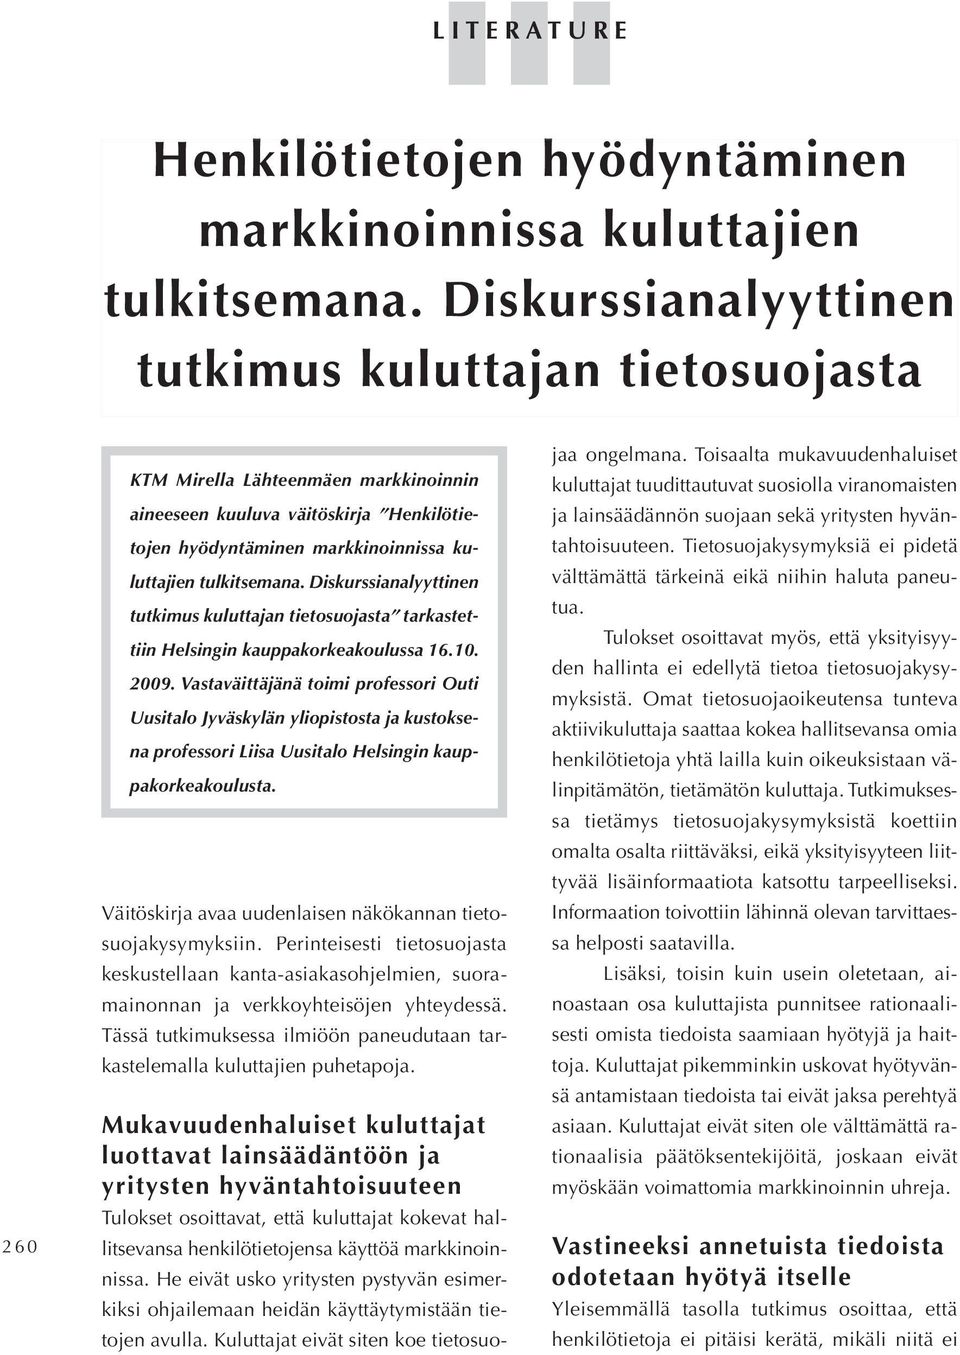 tulkitsemana. Diskurssianalyyttinen tutkimus kuluttajan tietosuojasta tarkastet tiin Helsingin kauppakorkeakoulussa 16.10. 2009.